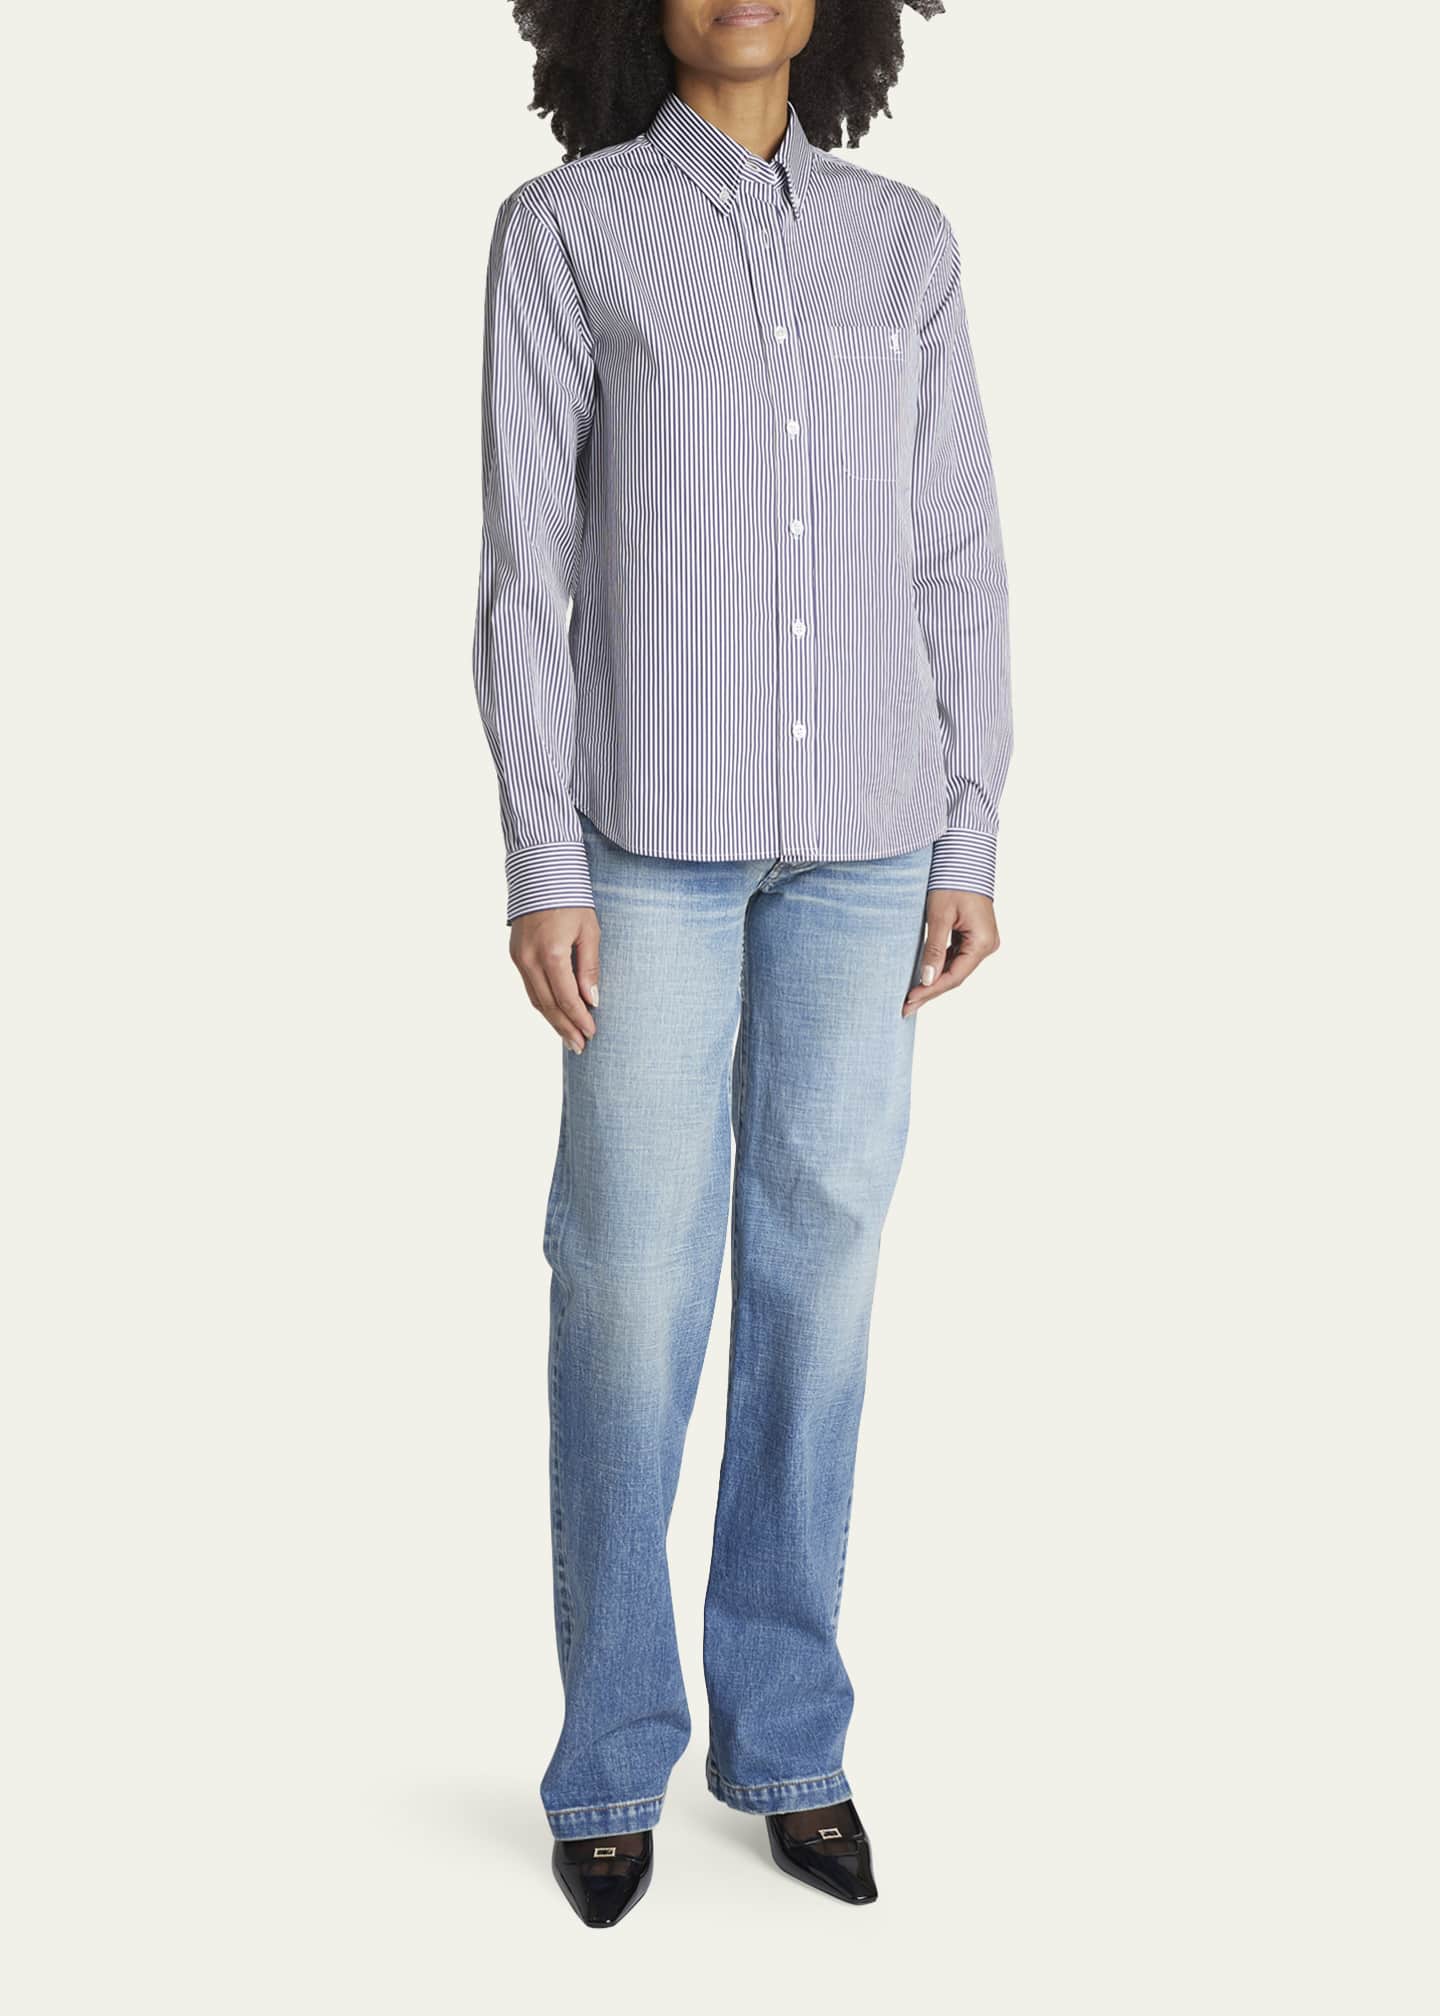 Saint Laurent Stripe Button-Down Shirt - Bergdorf Goodman